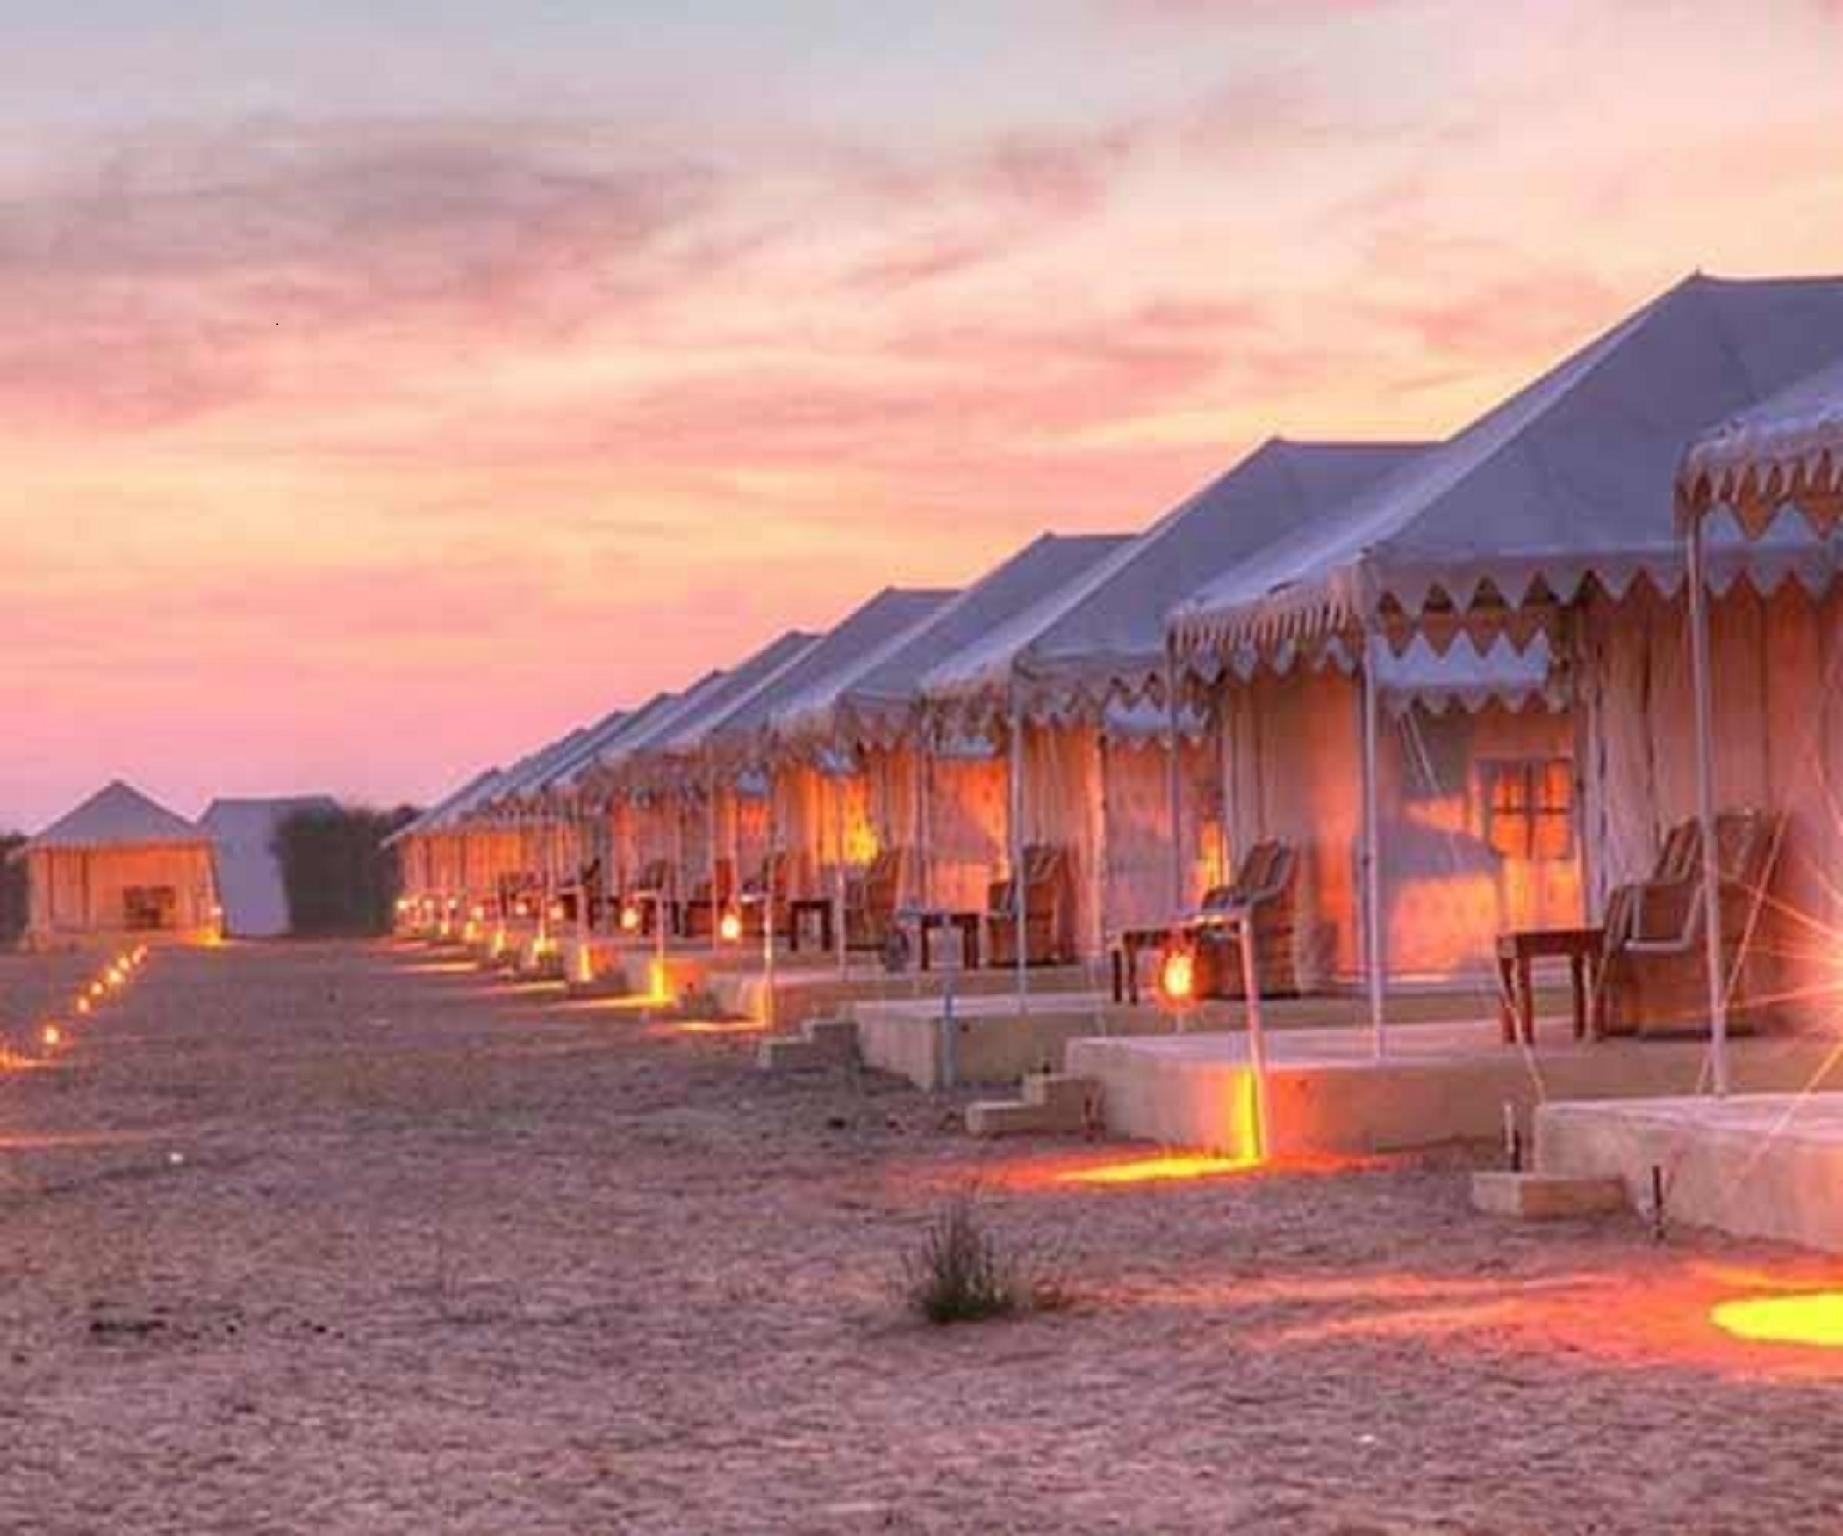 Holidays Inn Resort Camps Jaisalmer - Jaisalmer